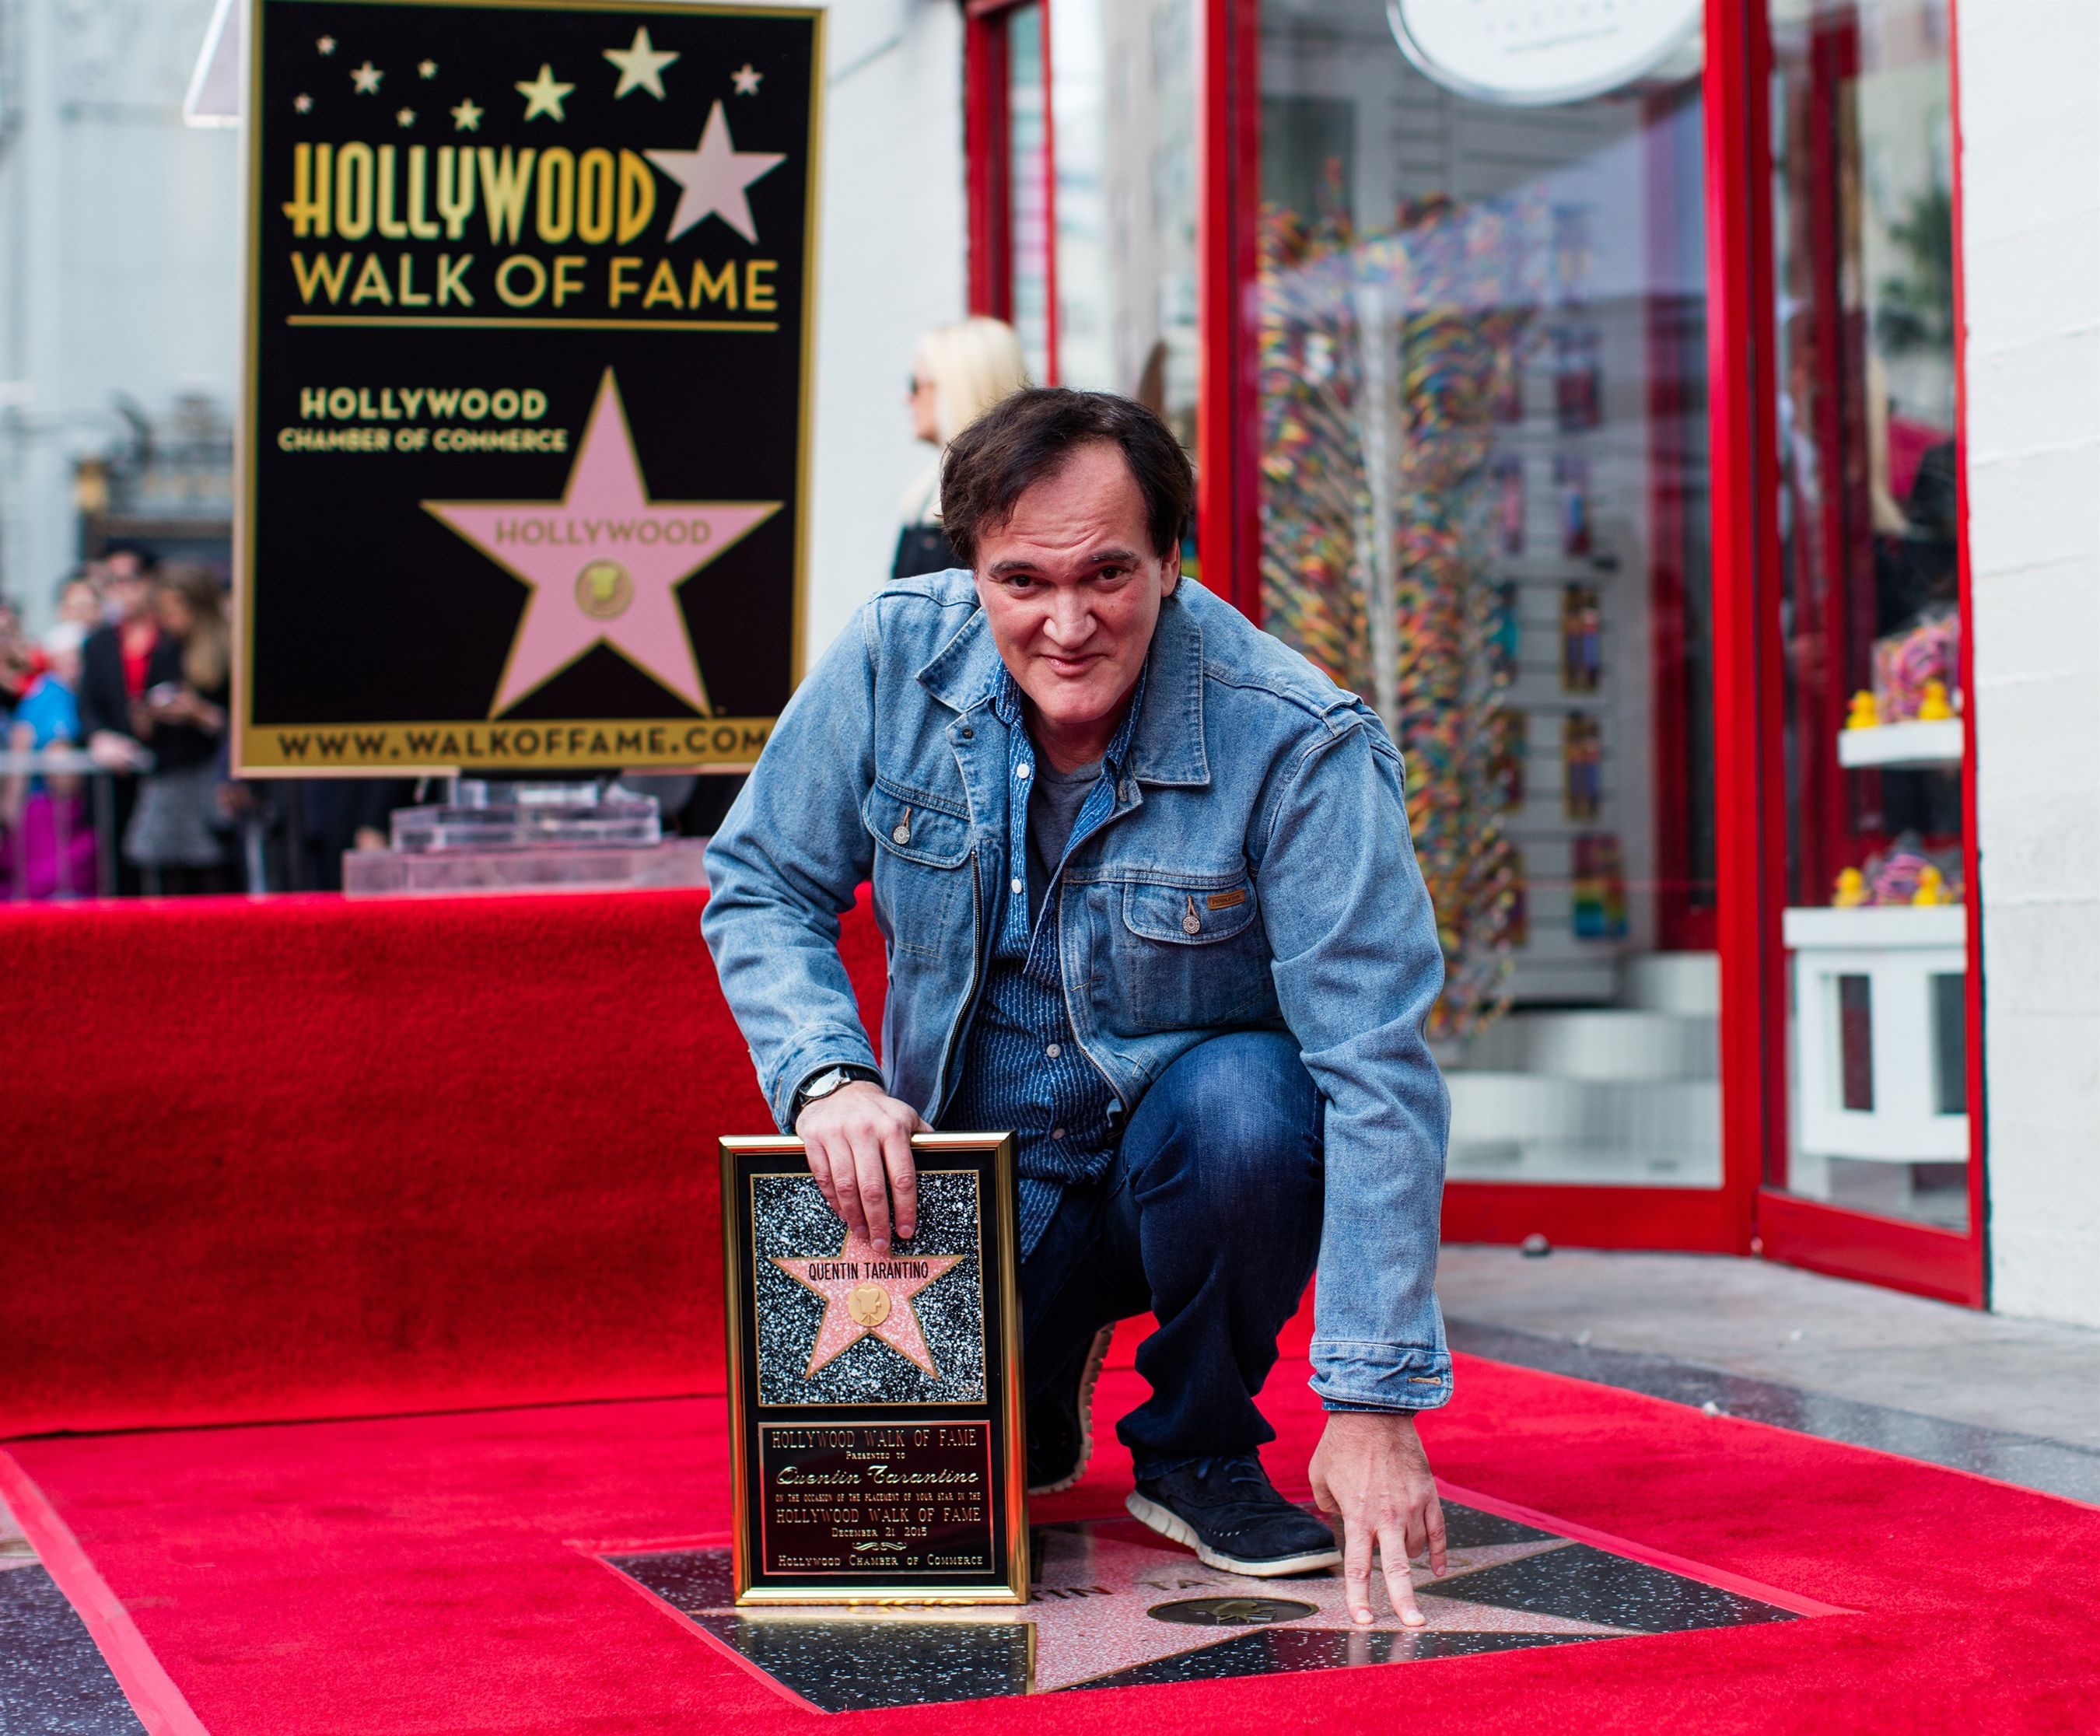 Tarantino abandona la que iba a ser última película: "Los directores no mejoran al envejecer"